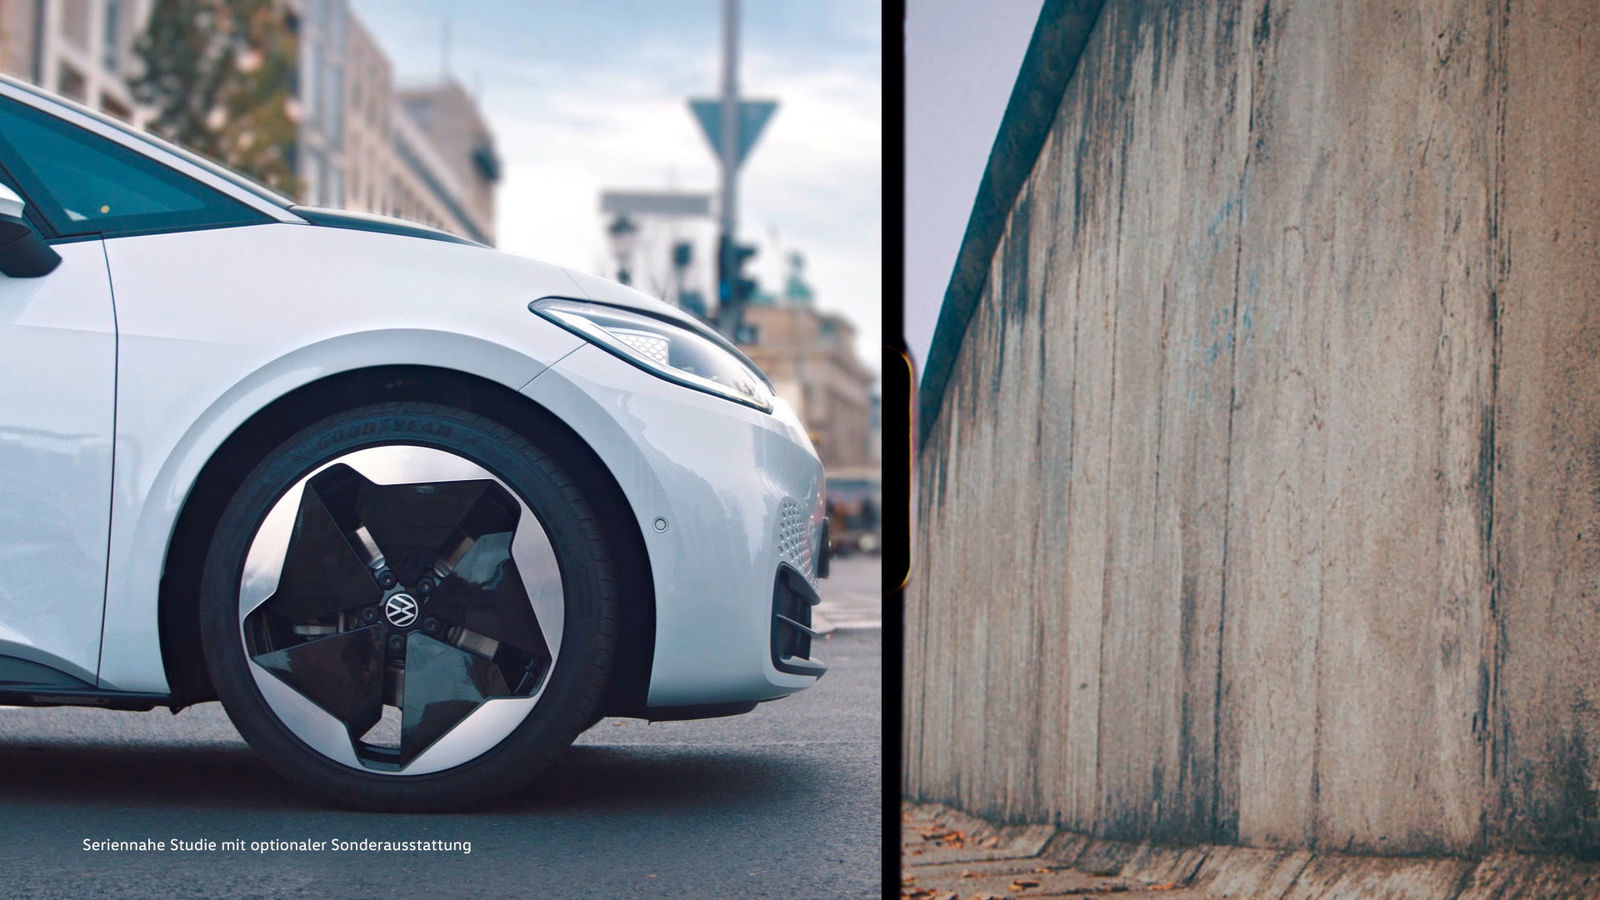 Volkswagen feiert den 30. Jahrestag des Mauerfalls mit einem Werbespot